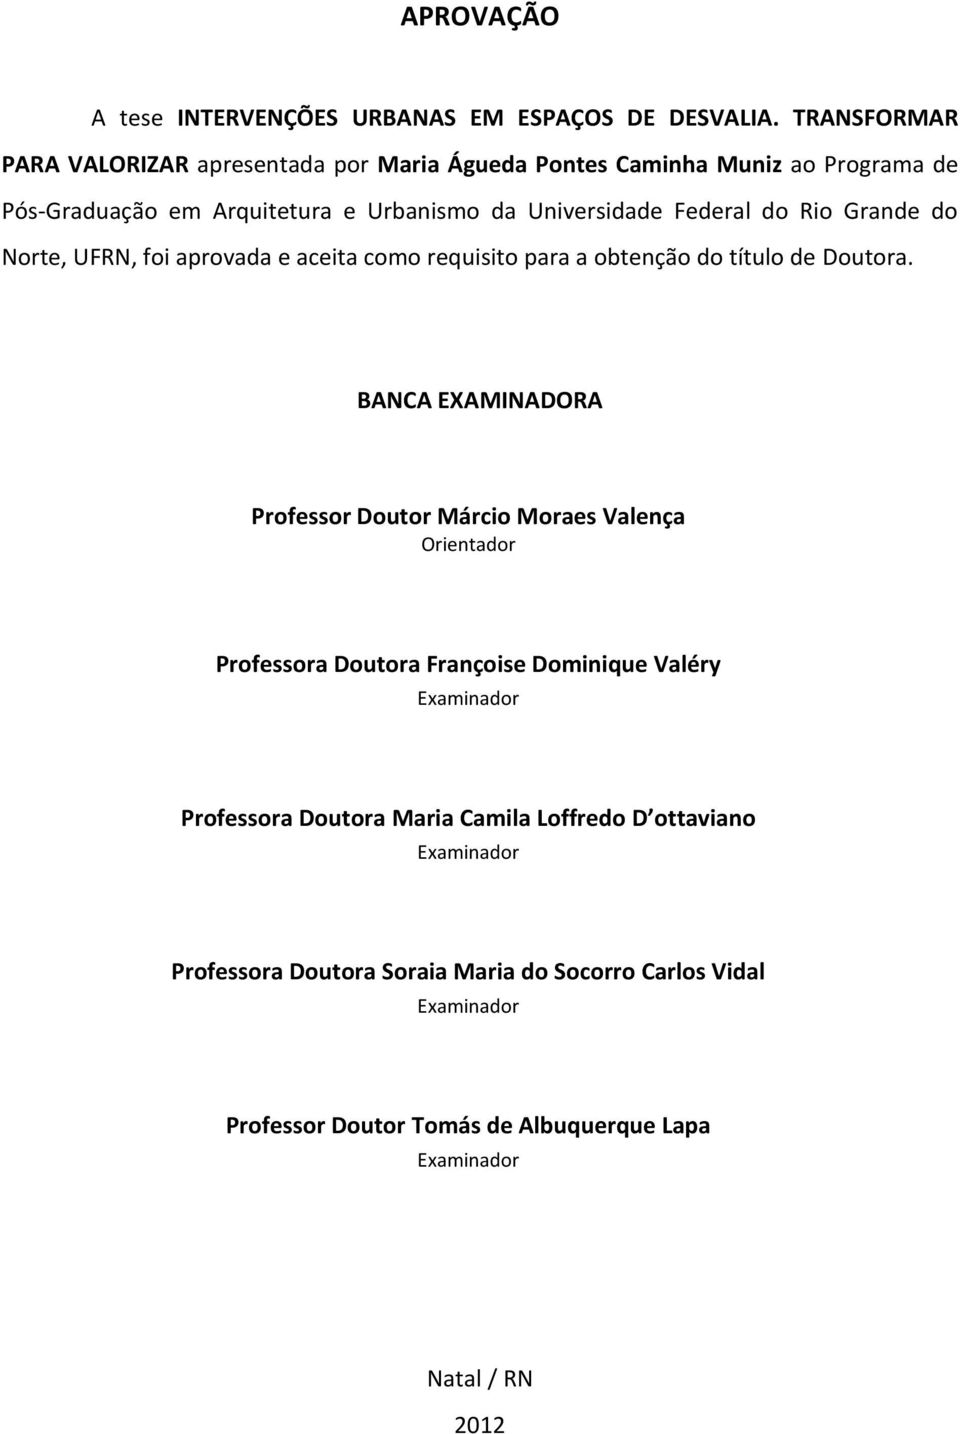 Rio Grande do Norte, UFRN, foi aprovada e aceita como requisito para a obtenção do título de Doutora.